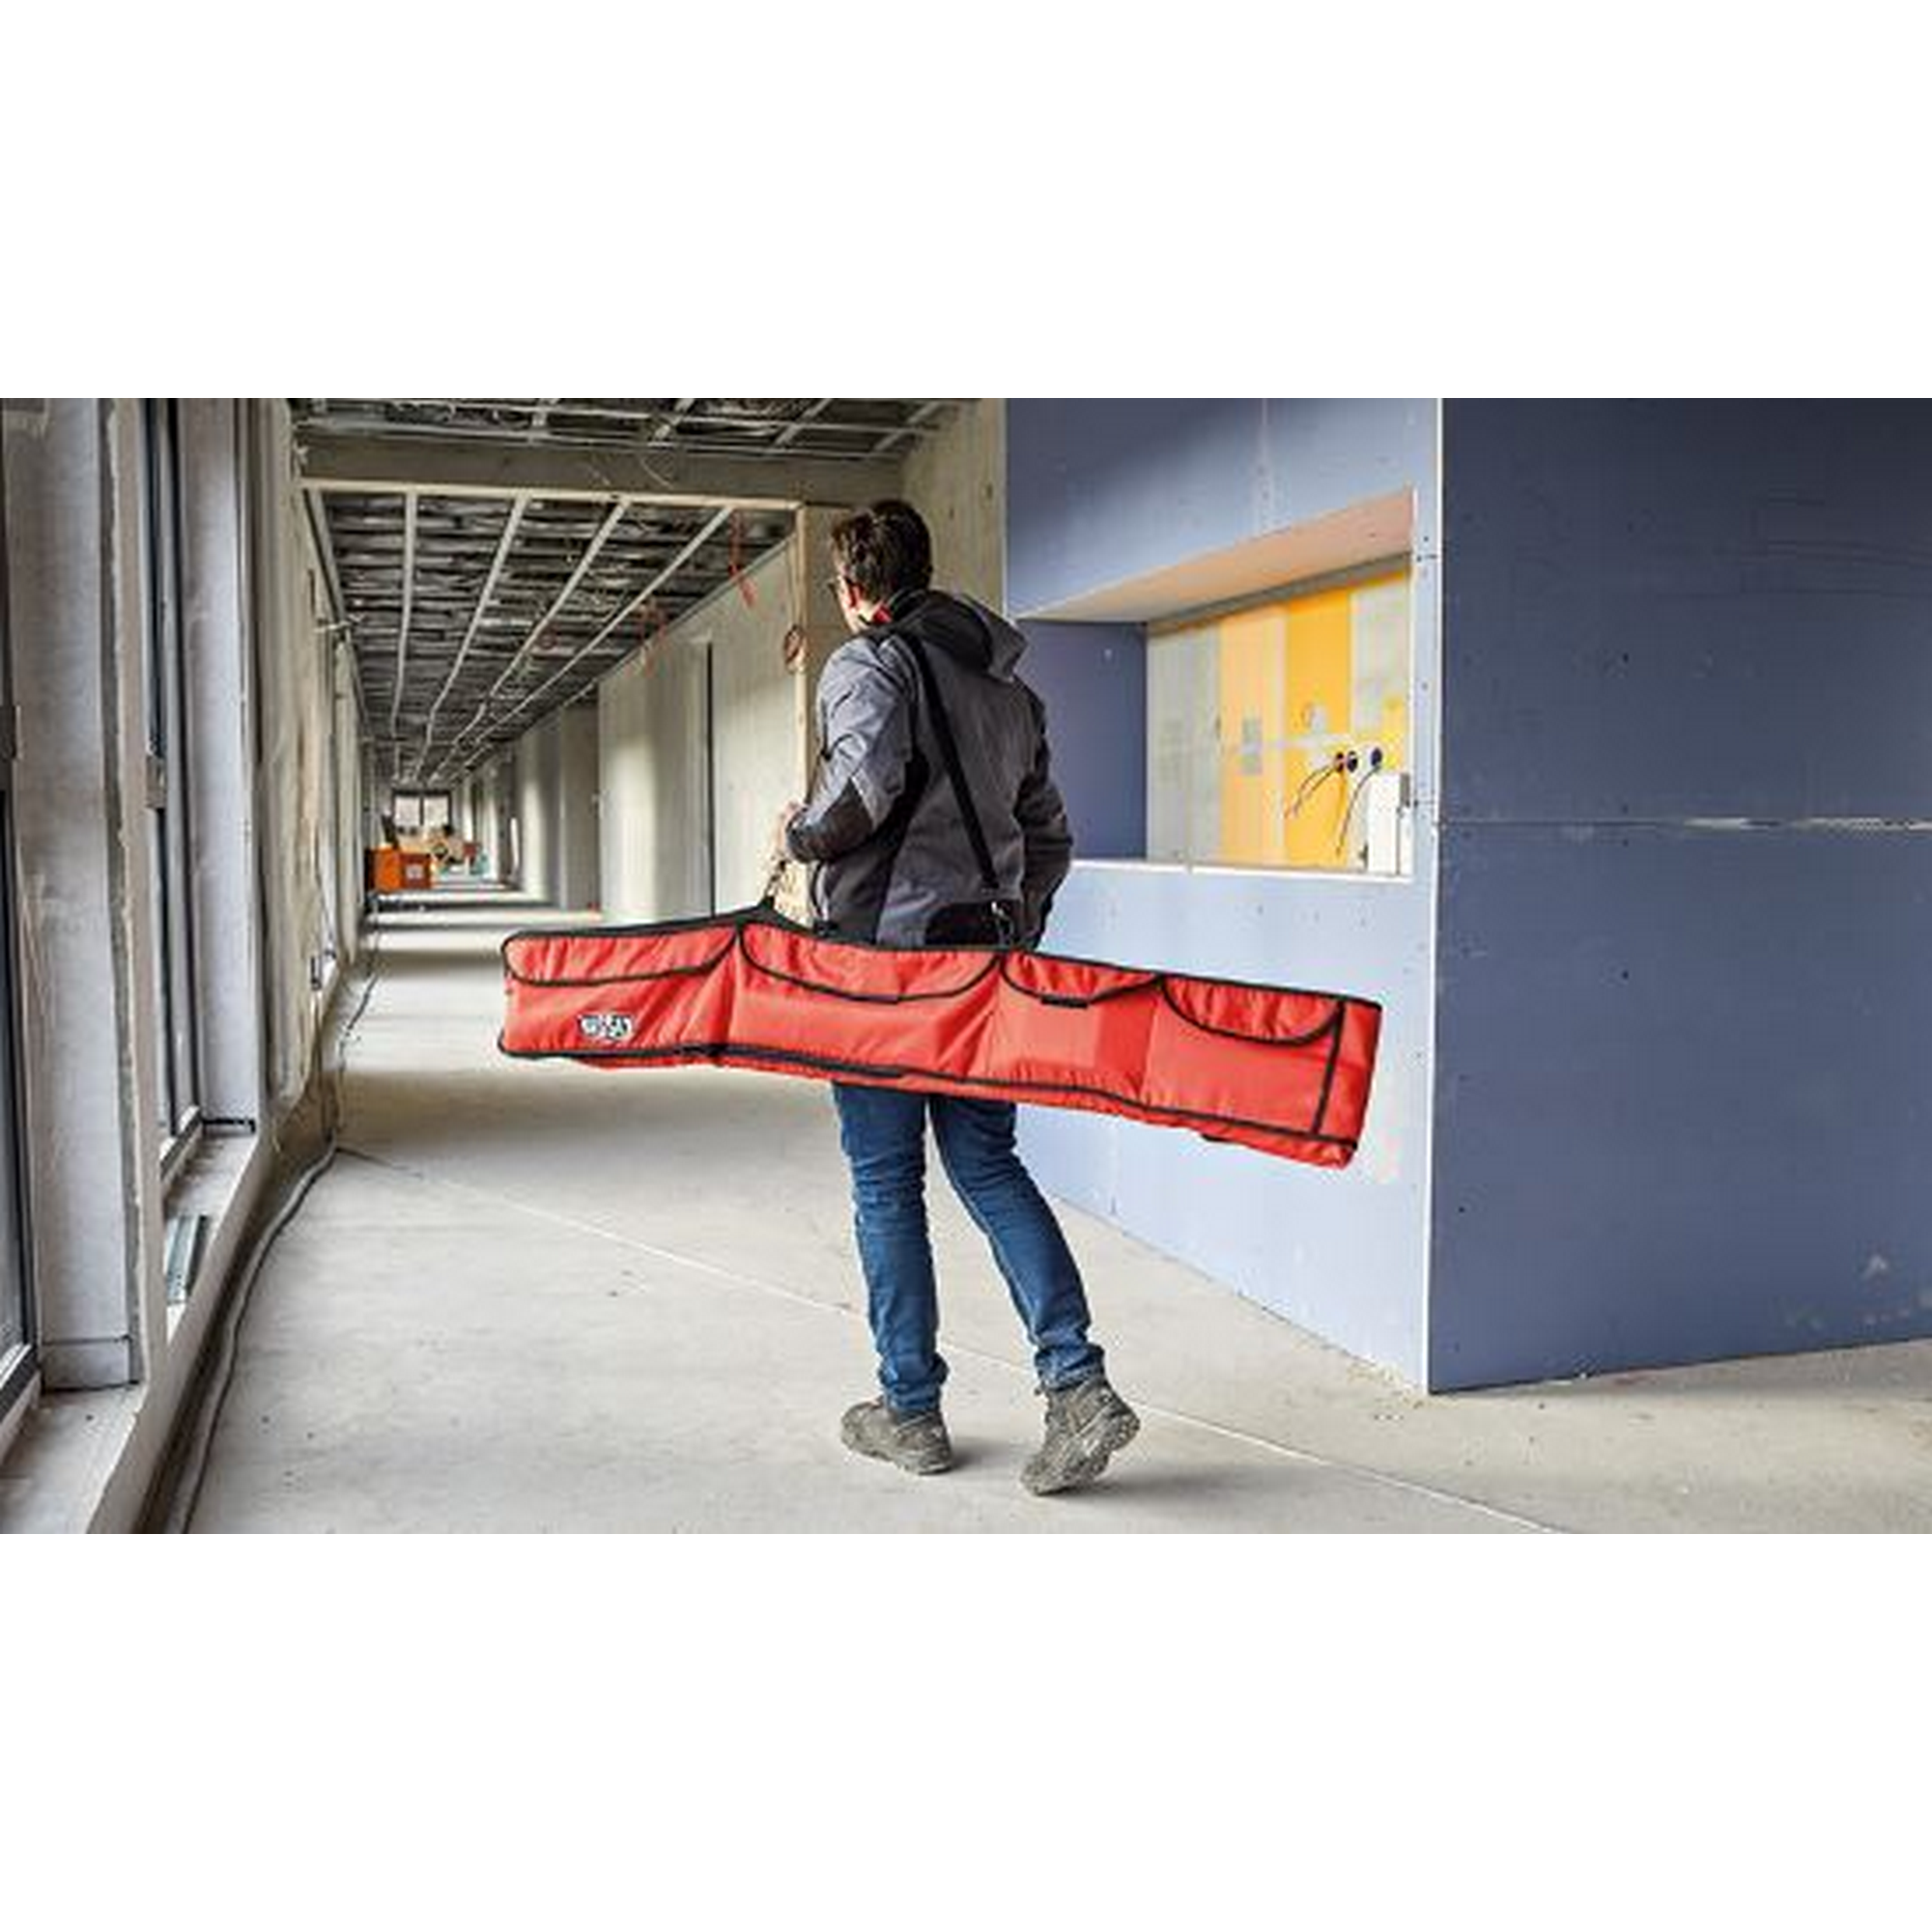 Kombitasche für Deckenstützen 'STE-BAG' rot 220 x 25 cm + product picture